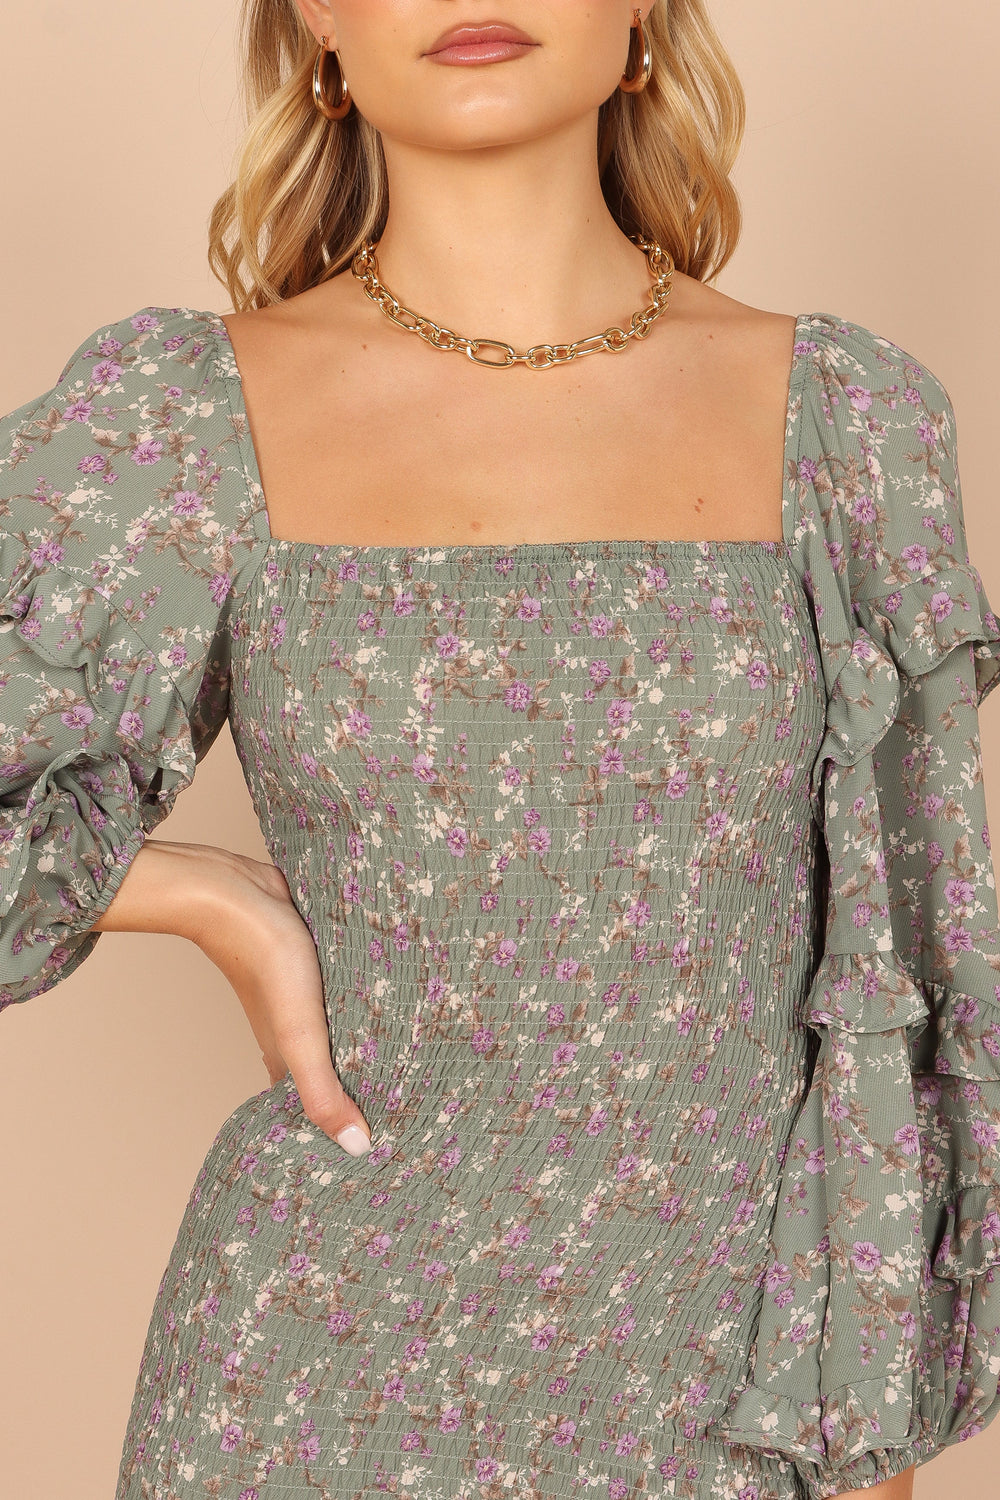 Petal and Pup USA DRESSES Bonita Shirred Frill Long Sleeve Bodycon Midi Dress - Sage Floral